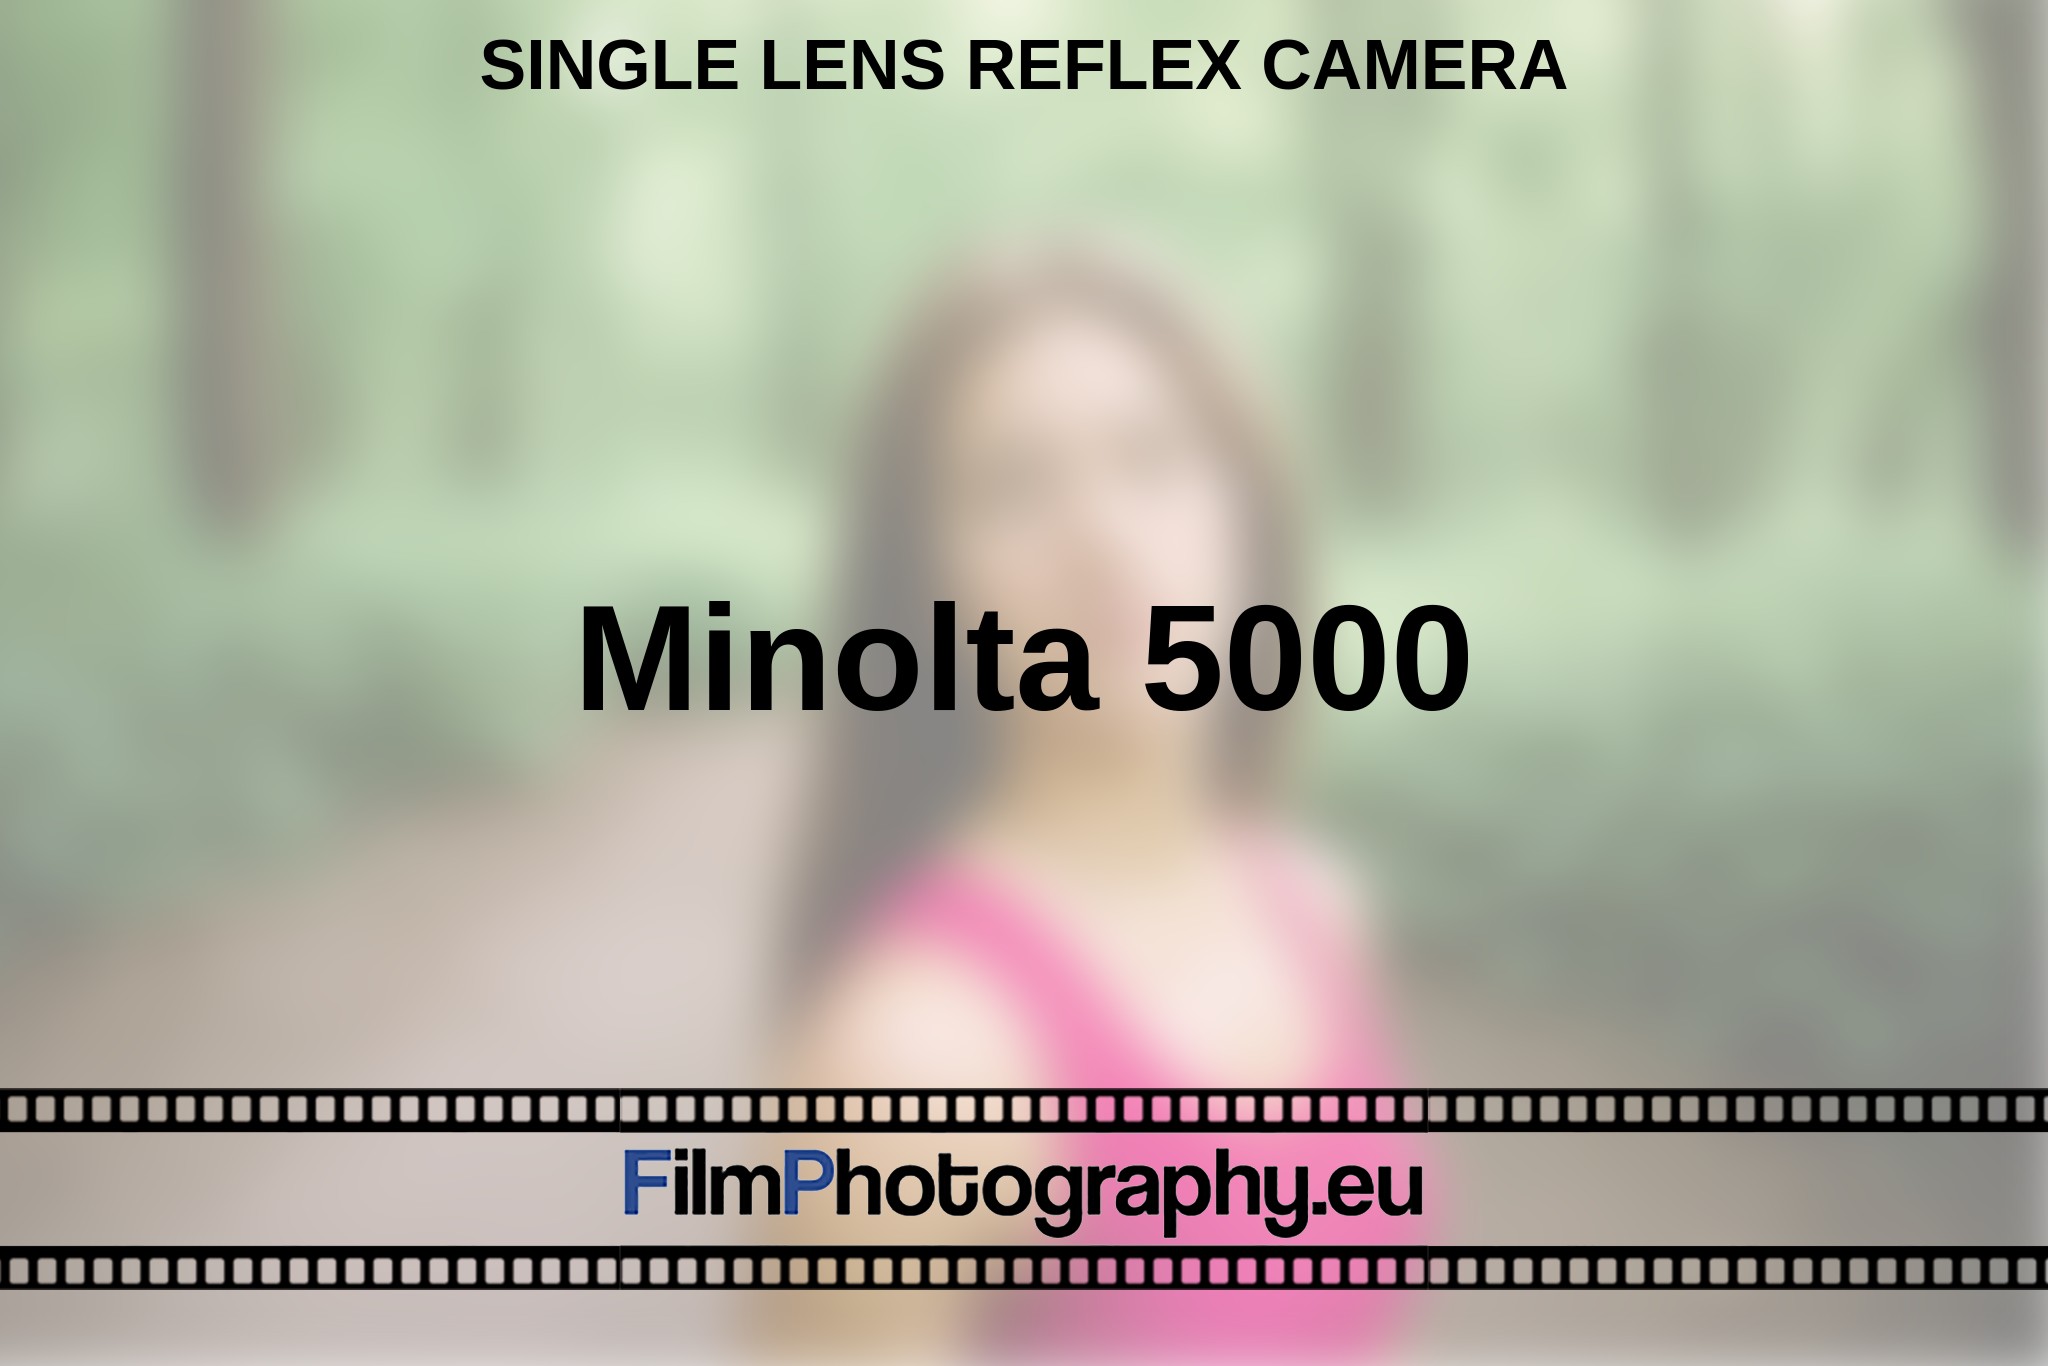 minolta-5000-single-lens-reflex-camera-en-bnv.jpg